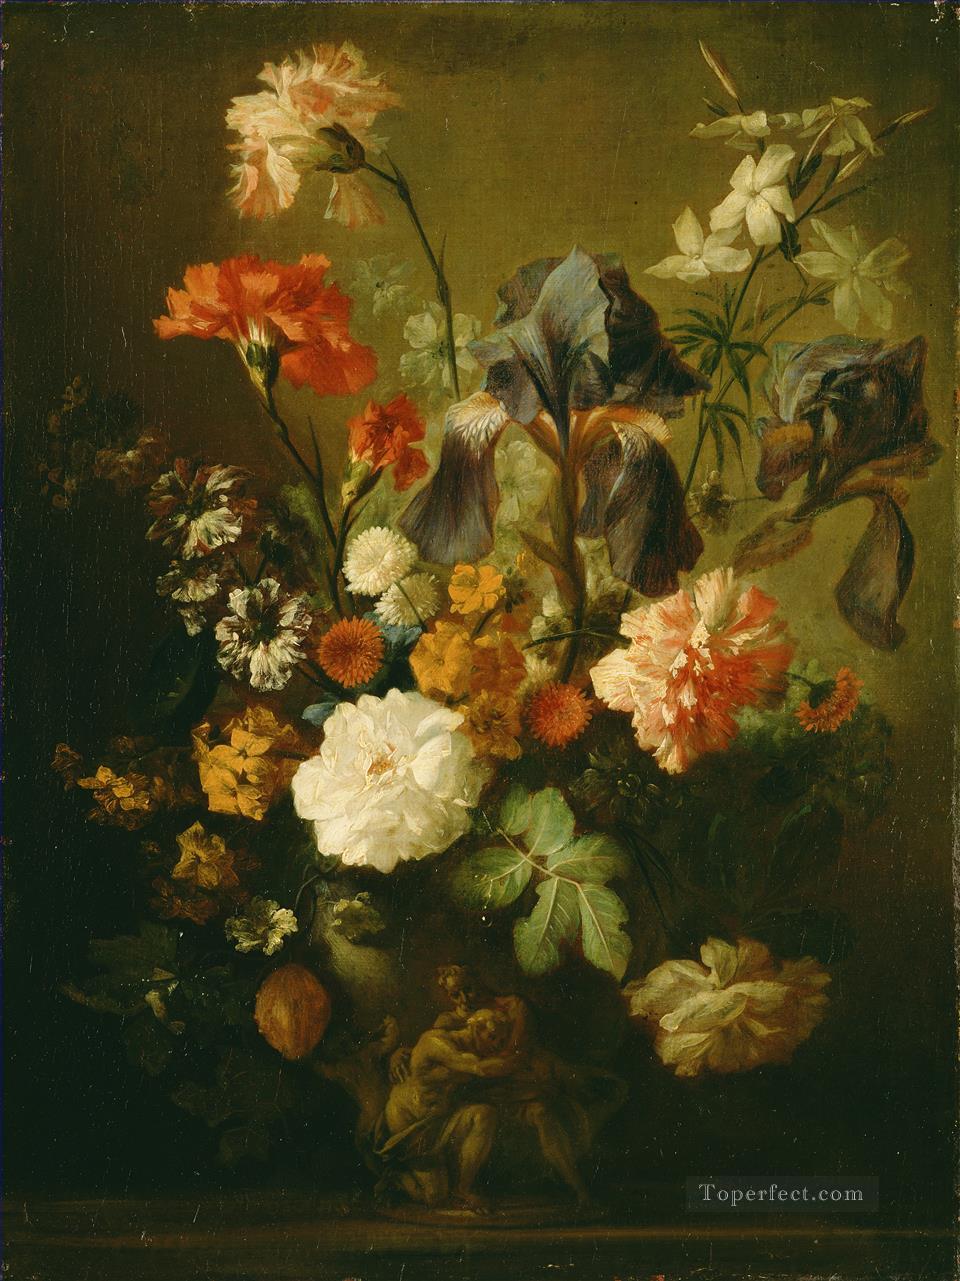 花瓶 1 月 3 日 van Huysum 古典的な花油絵